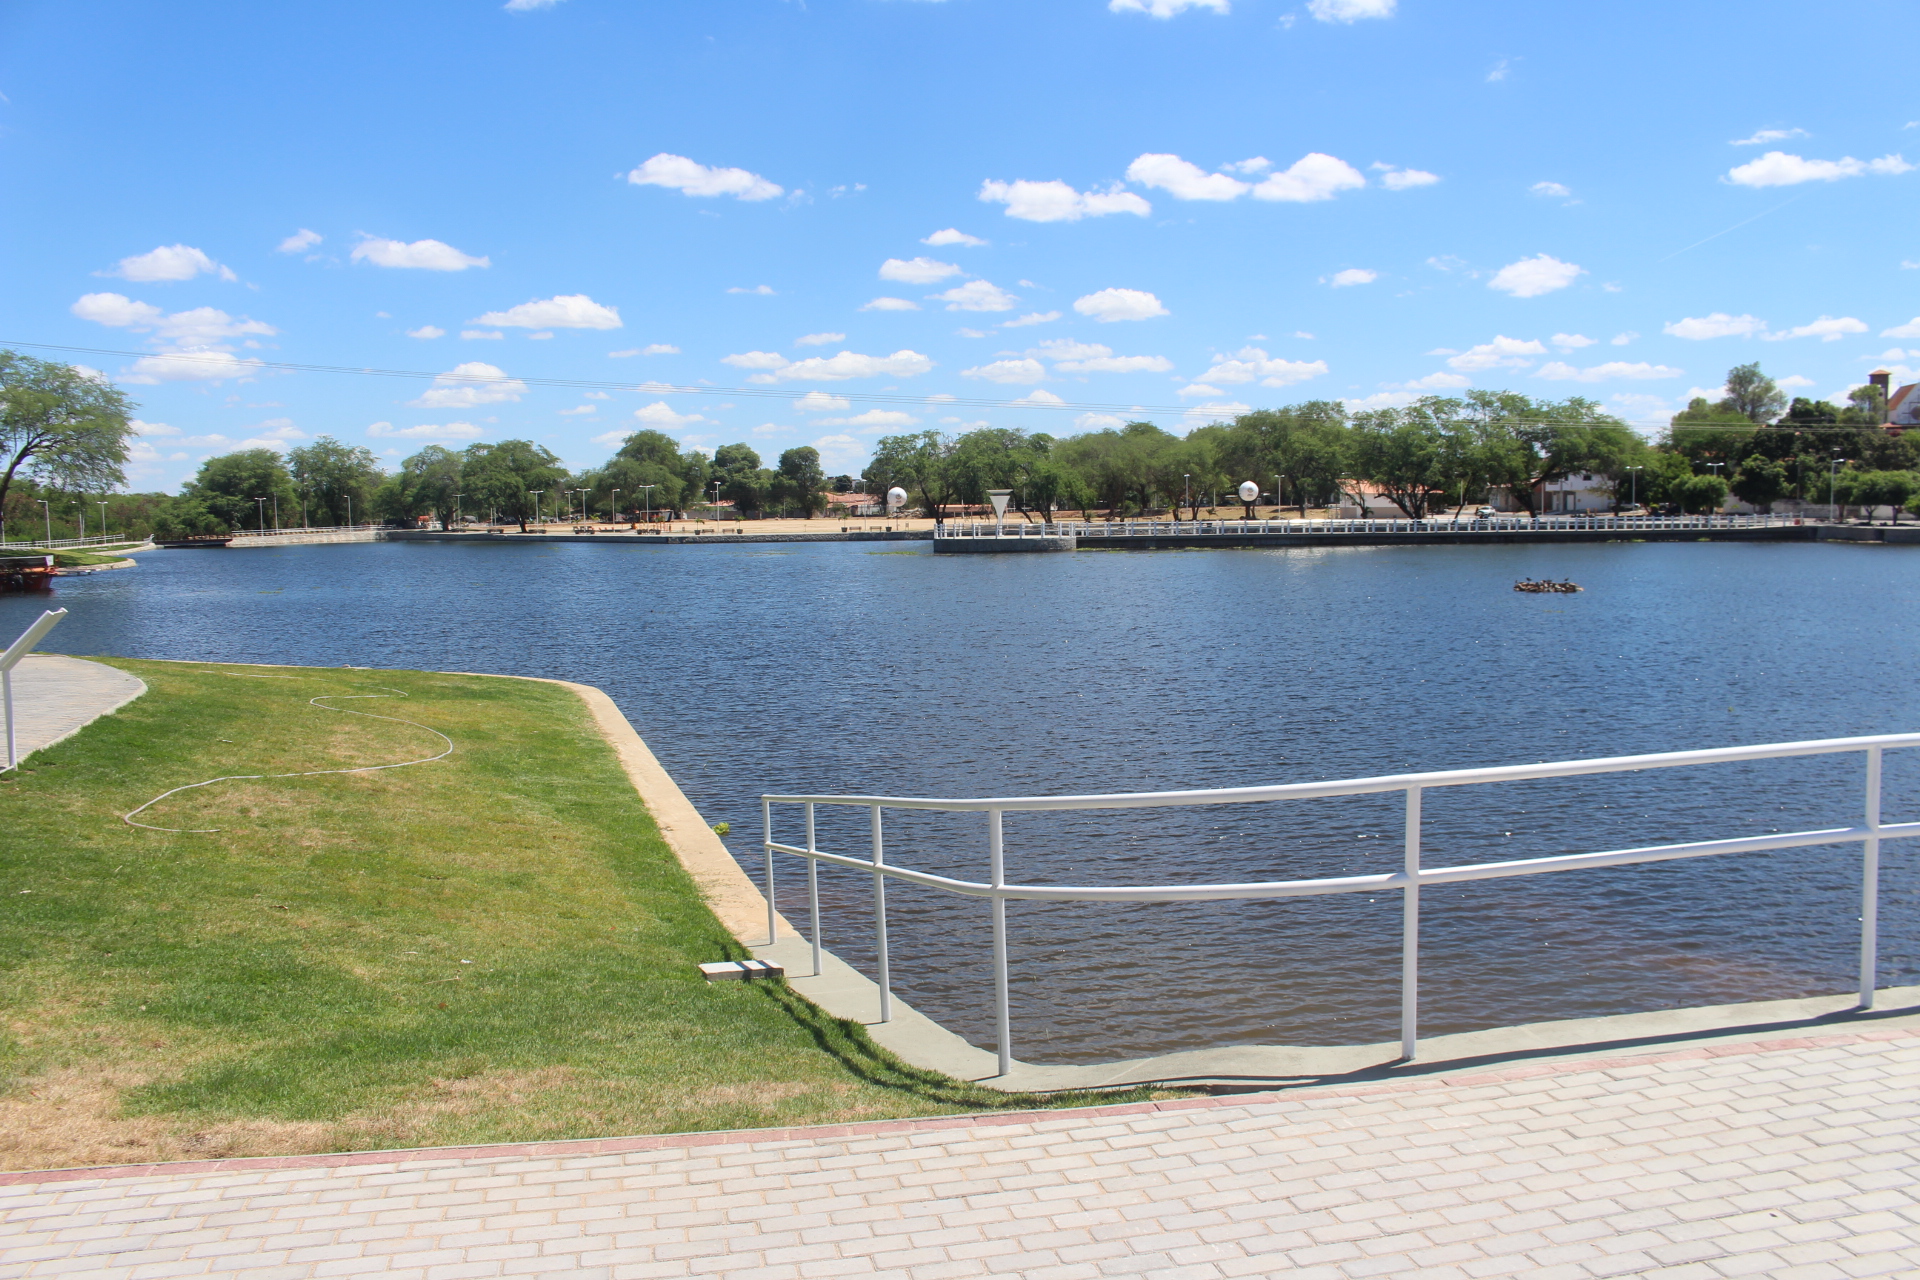  Seinfra baixa nível do lago do Parque Balneário para realizar etapa de obra do Lago da Aurora